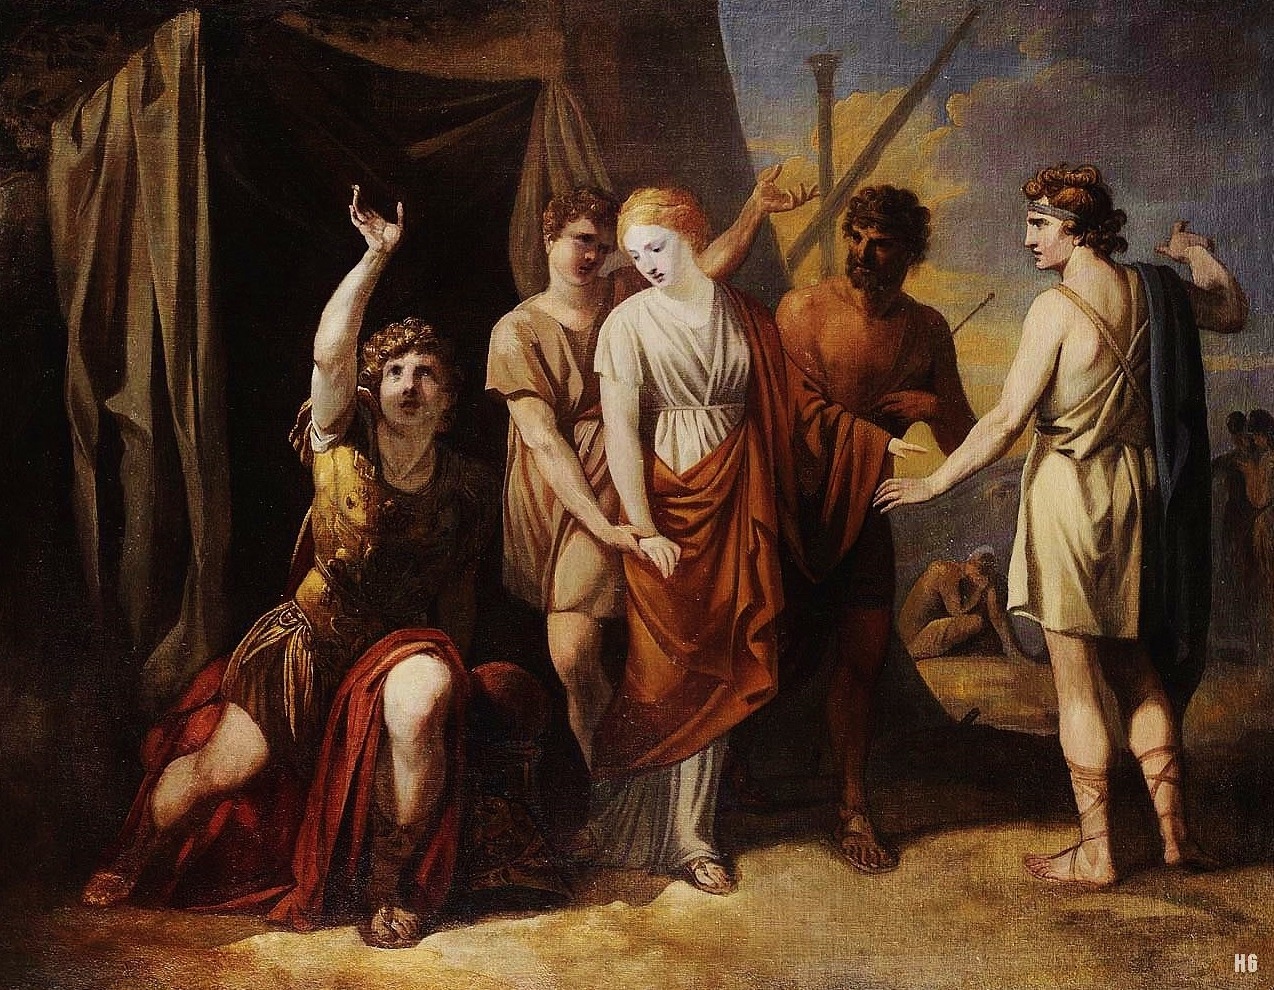 Achilles Mourning Briseis. 1780. Nicolai Abildgaard. Danish 1743-1809. oil/canvas.
http://hadrian6.tumblr.com